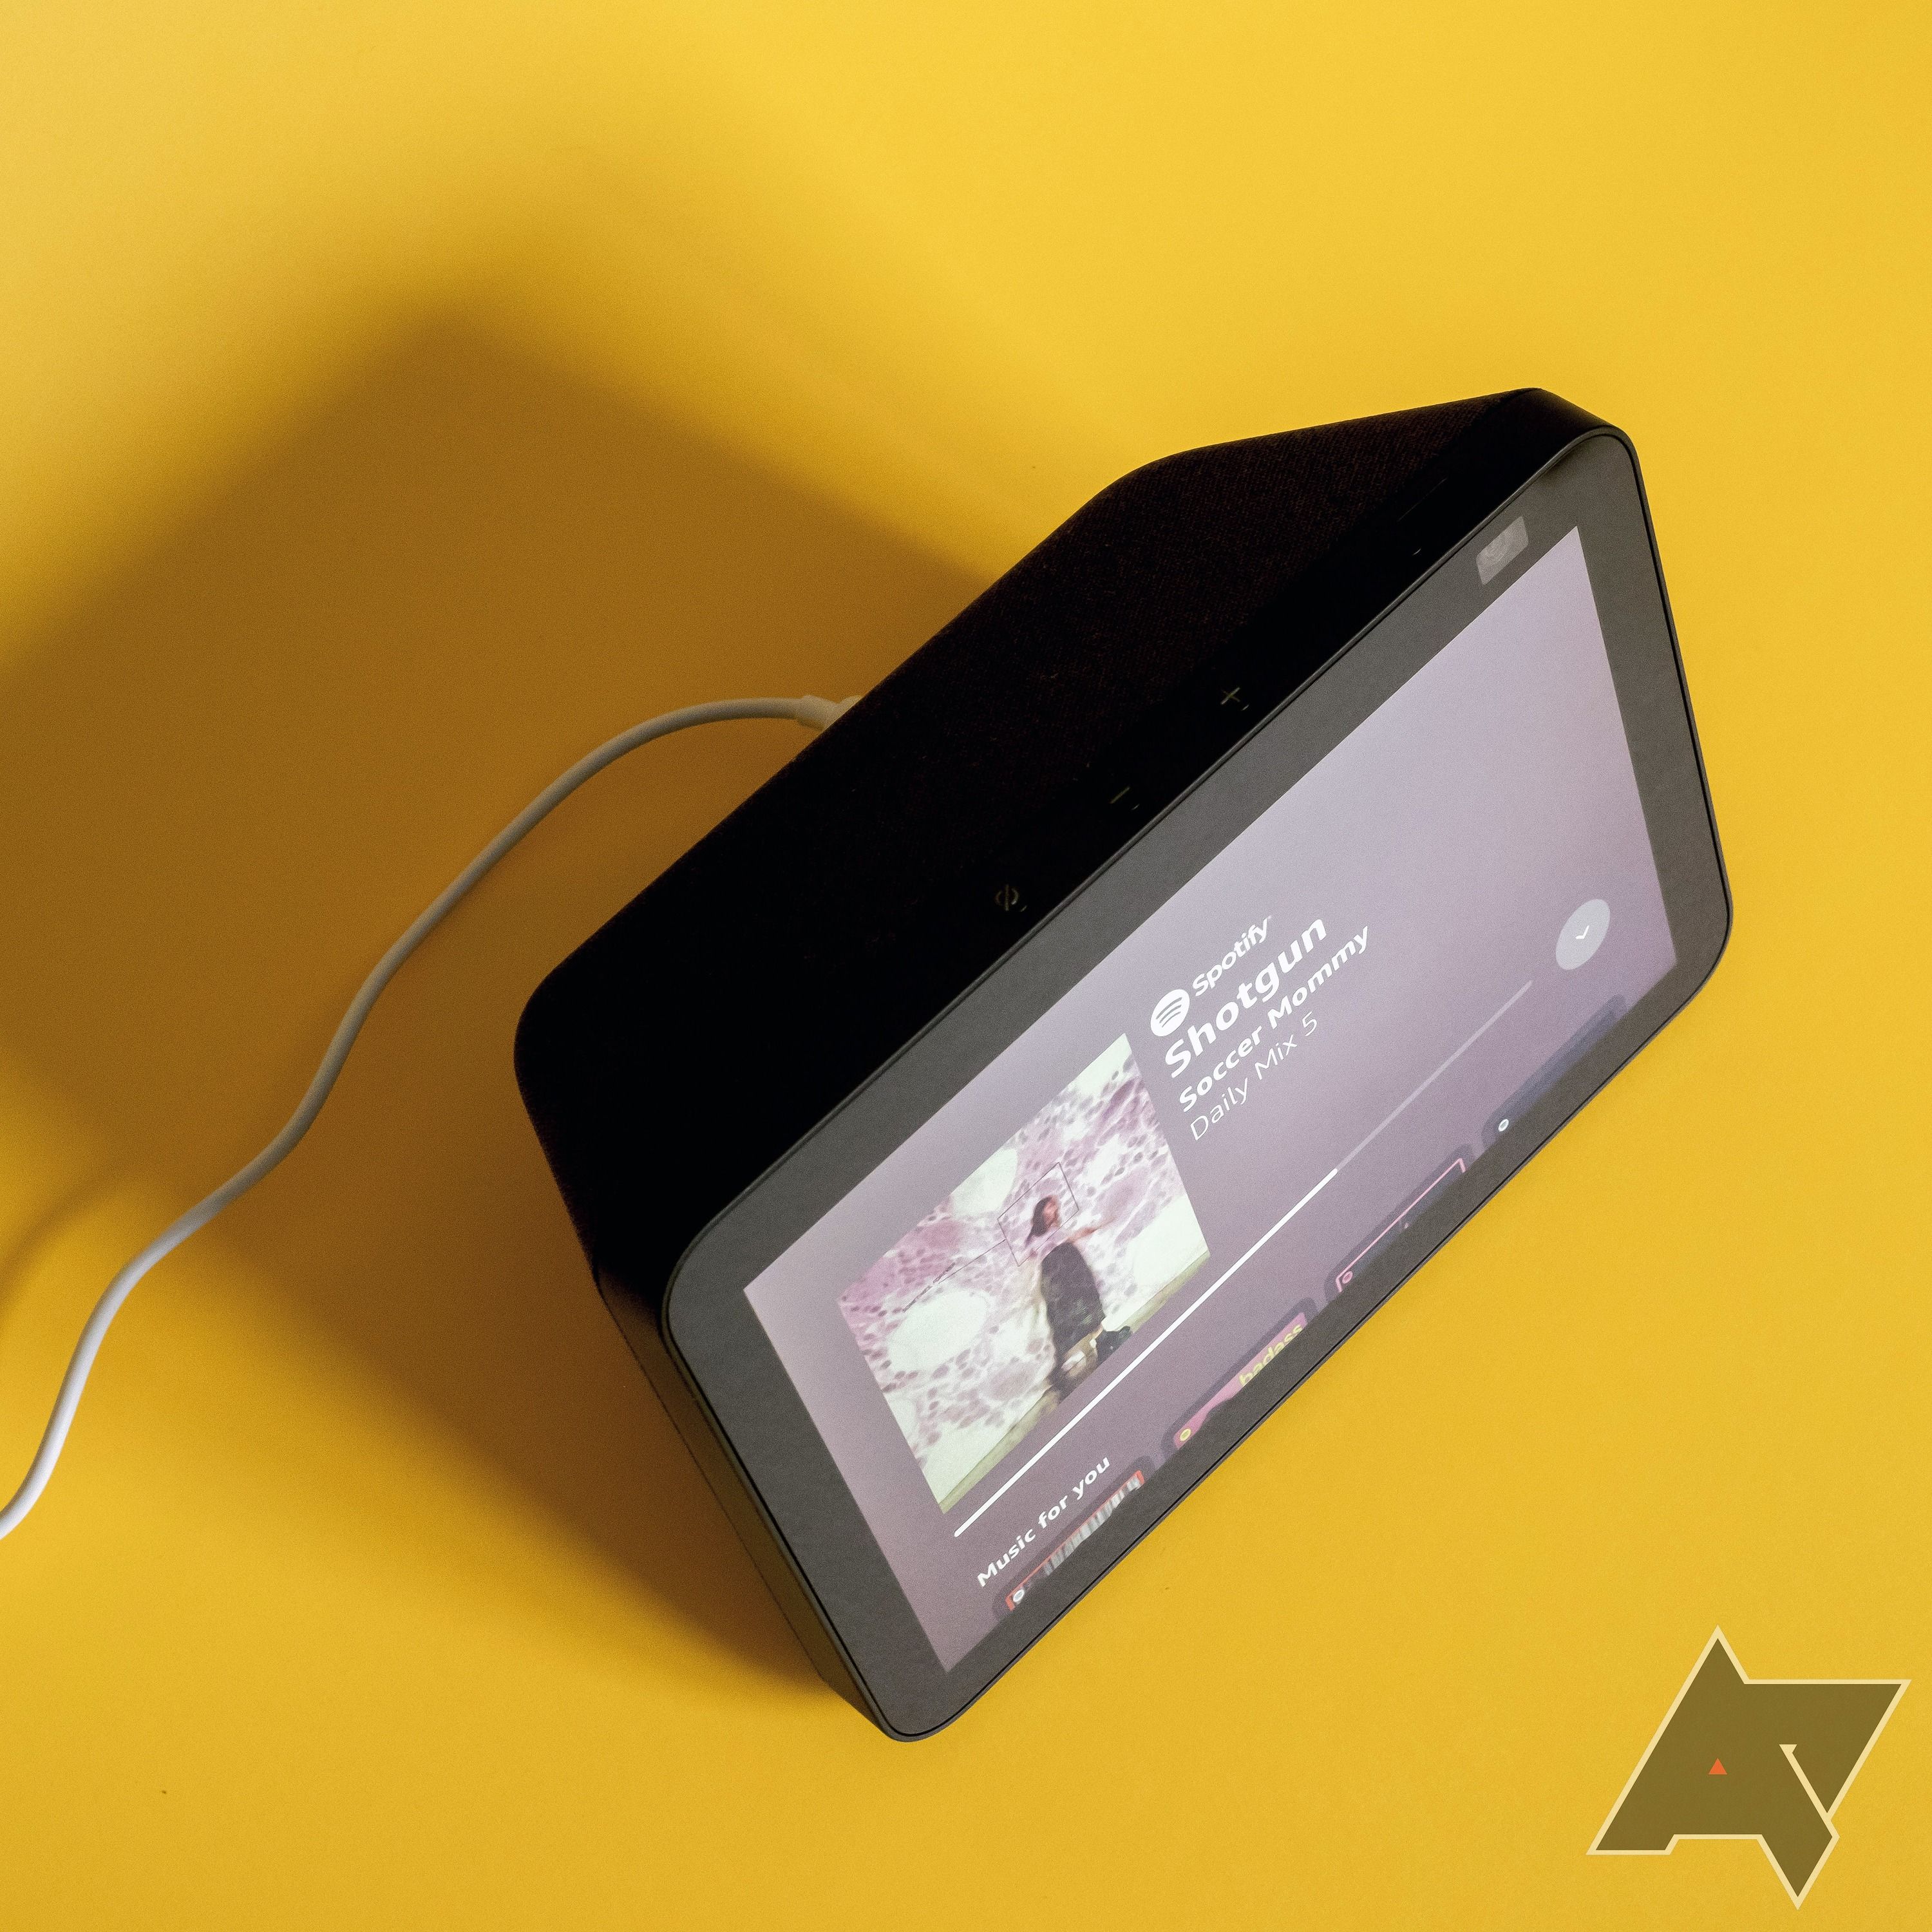 Vista superior de um Amazon Echo Show 8 de segunda geração colocado em uma superfície amarela